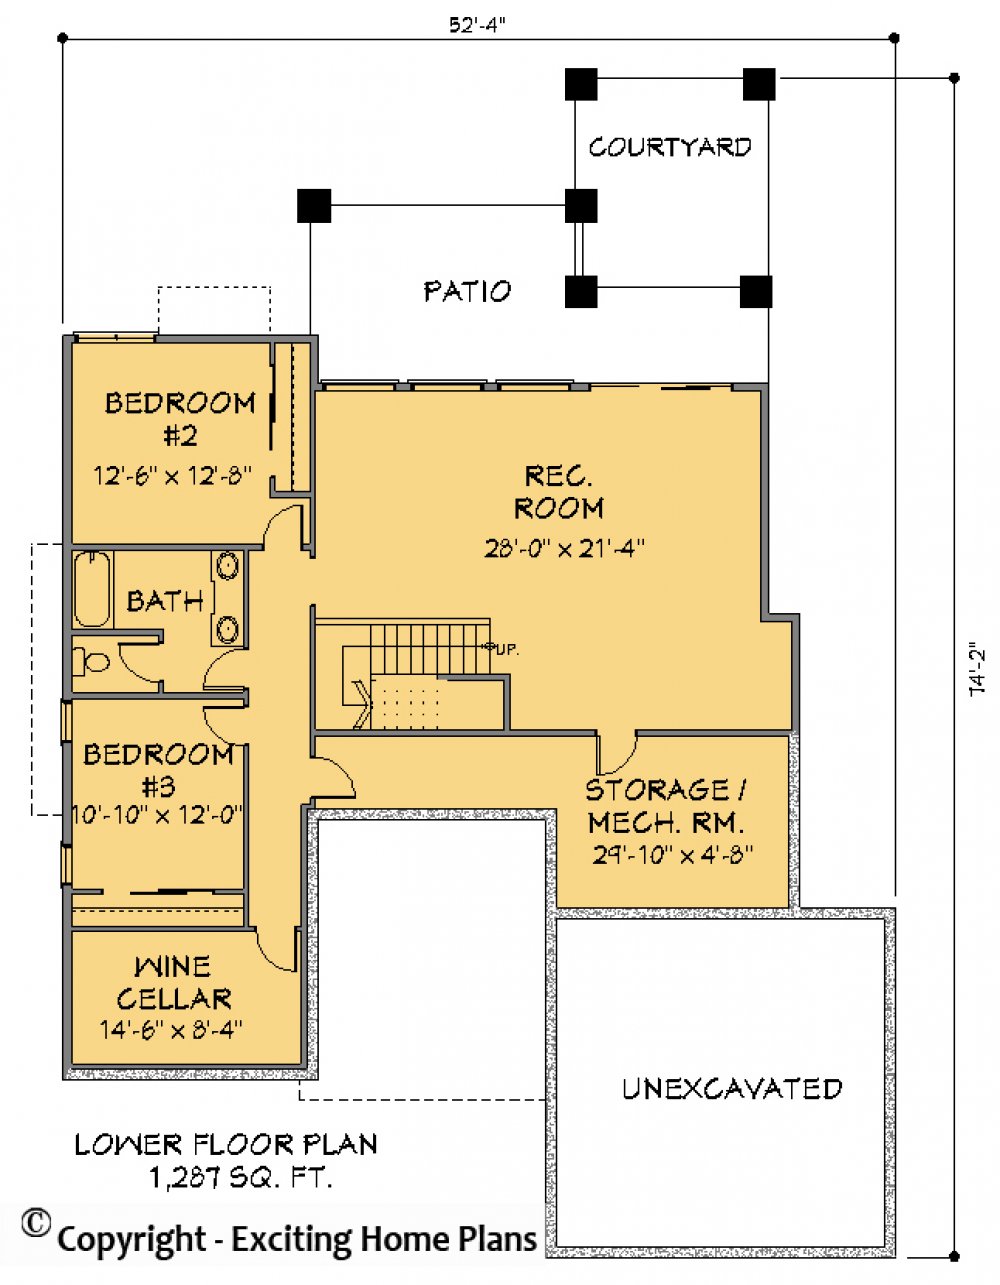 House Plan E1415-10  Lower Floor Plan